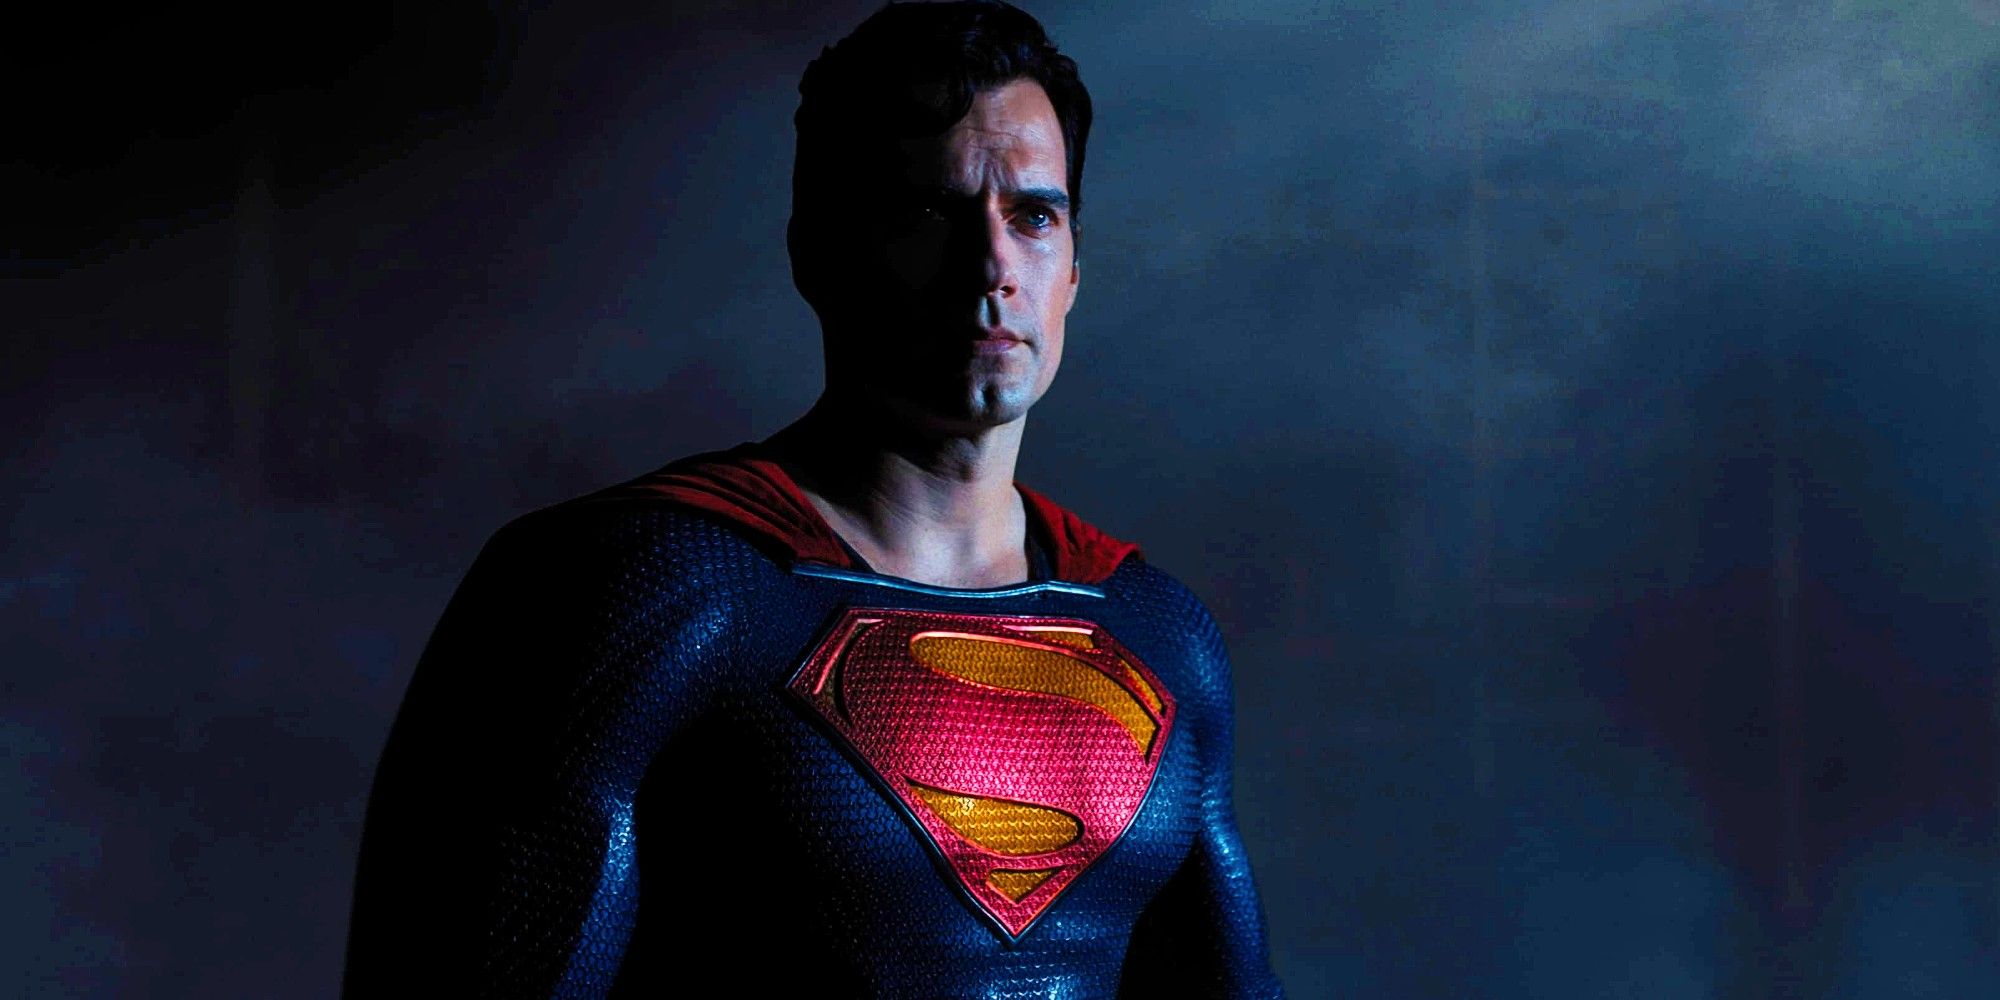 Henry_Cavill_as_Superman_in_Black_Adam